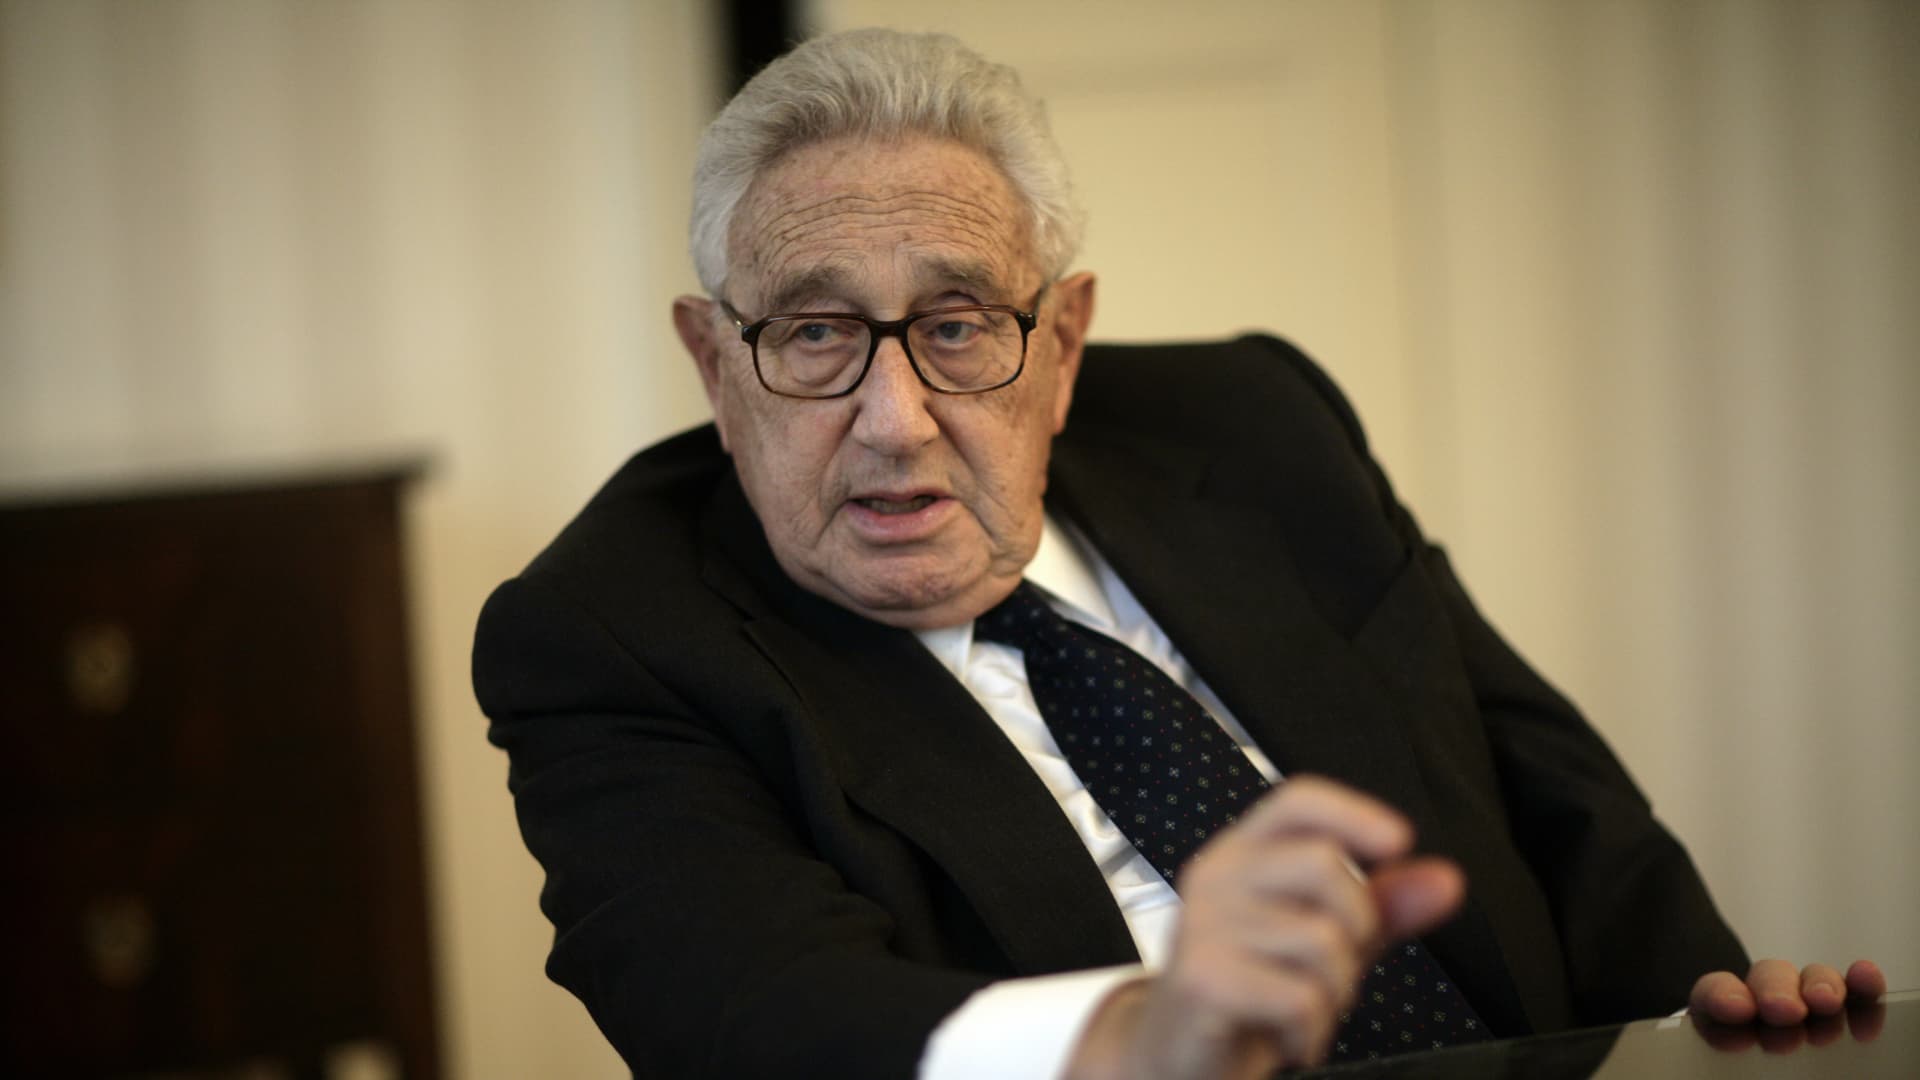 Ukrajina odmítá Kissingerův návrh postoupit území Rusku